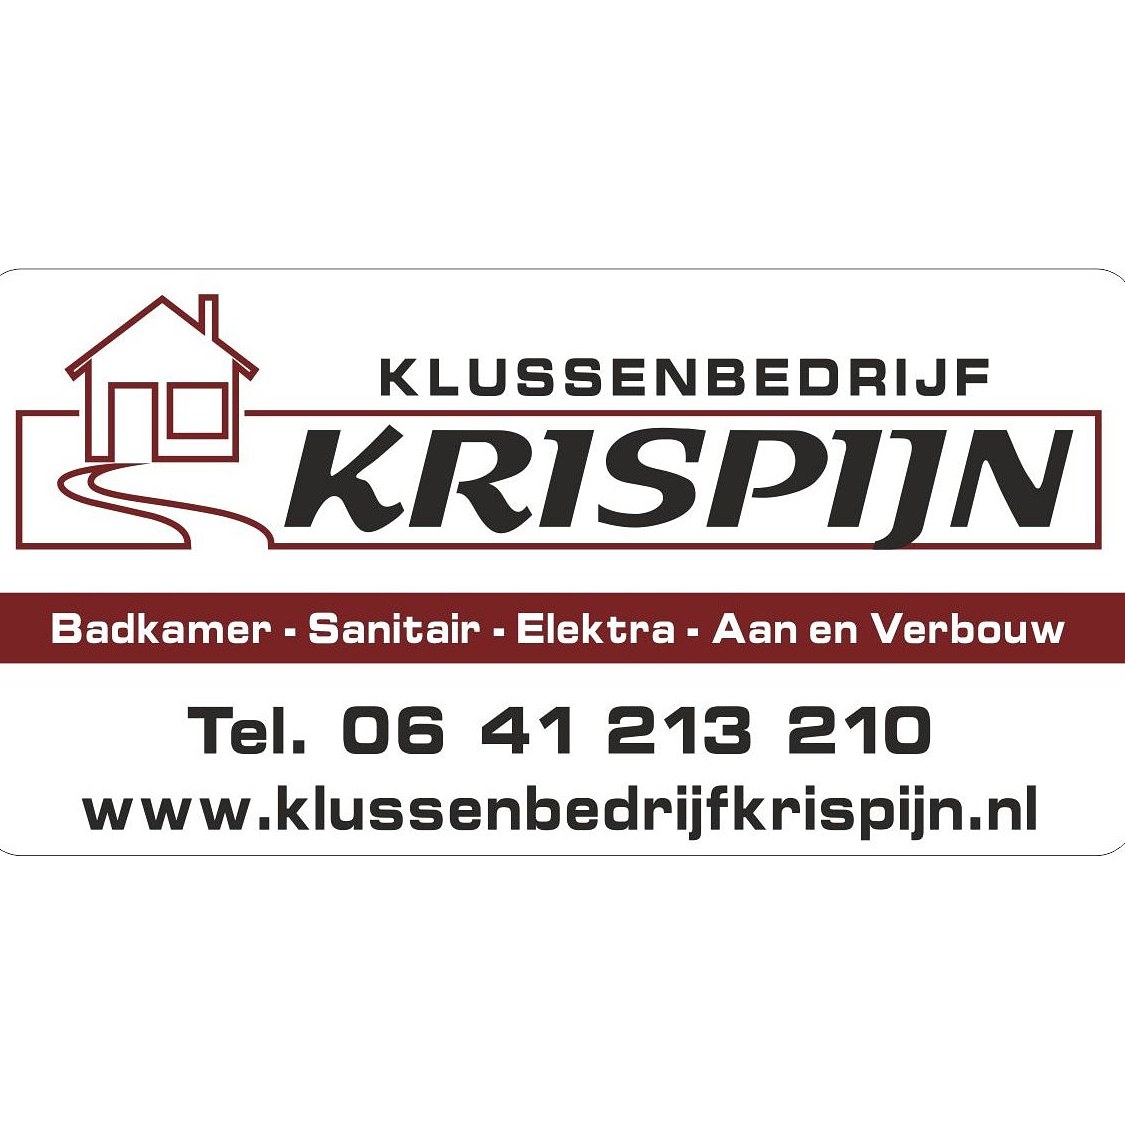 Krispijn Klussenbedrijf W Logo